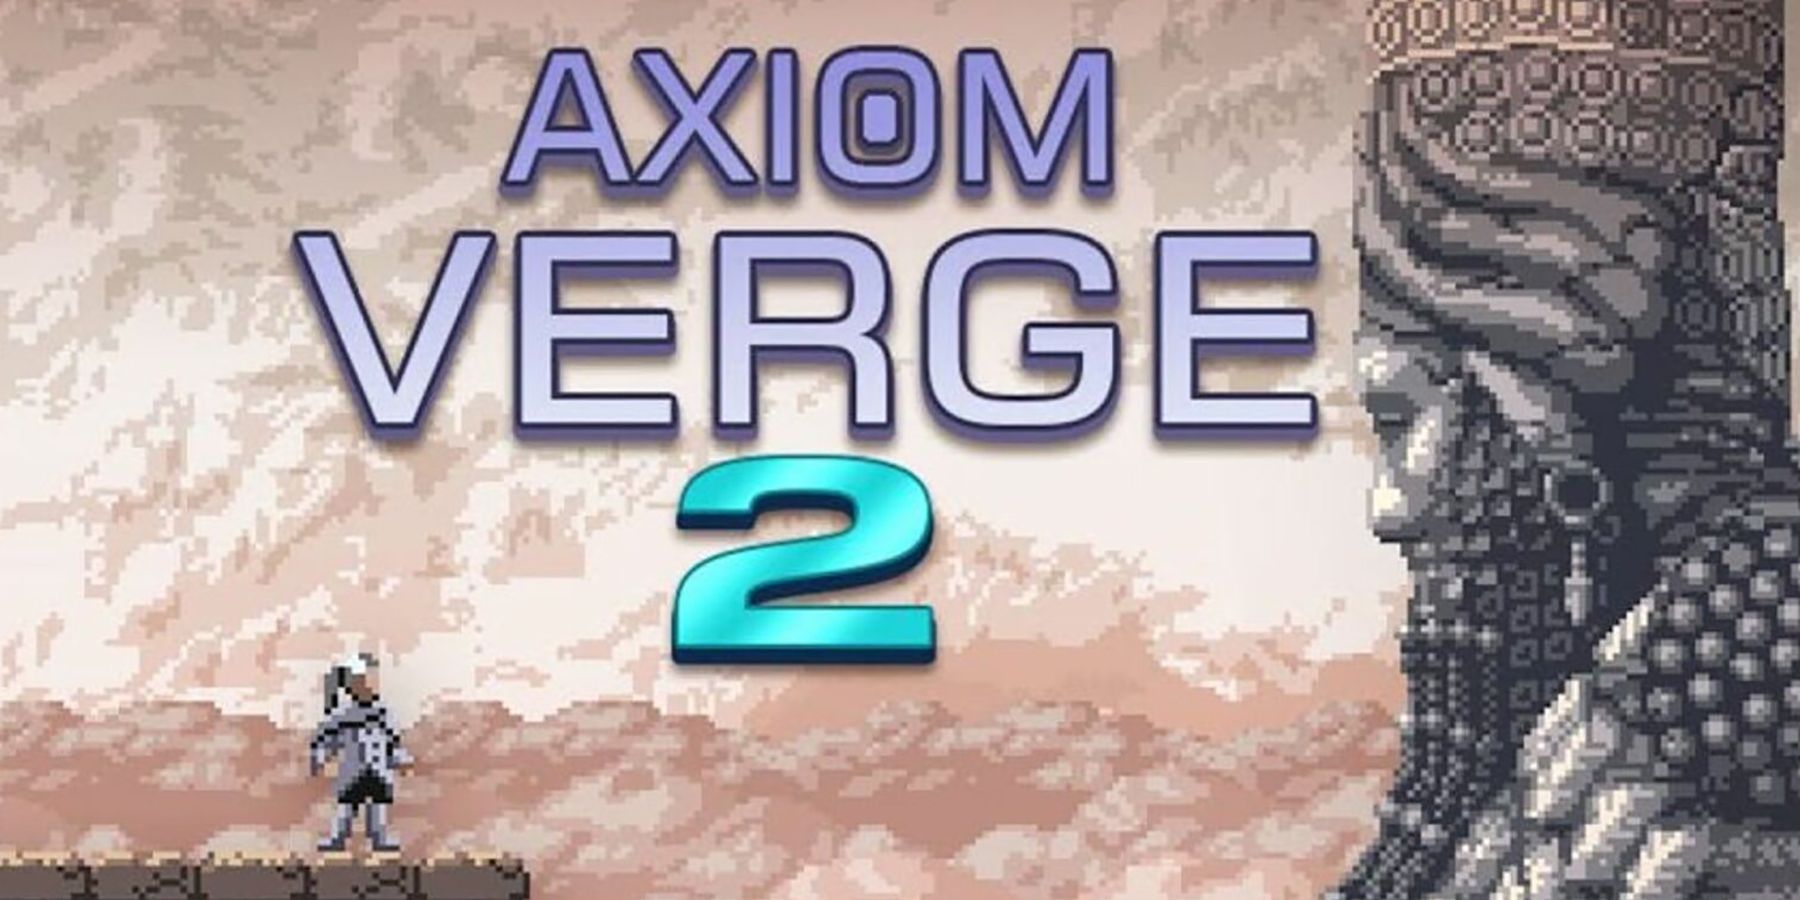 axiom_verge_2